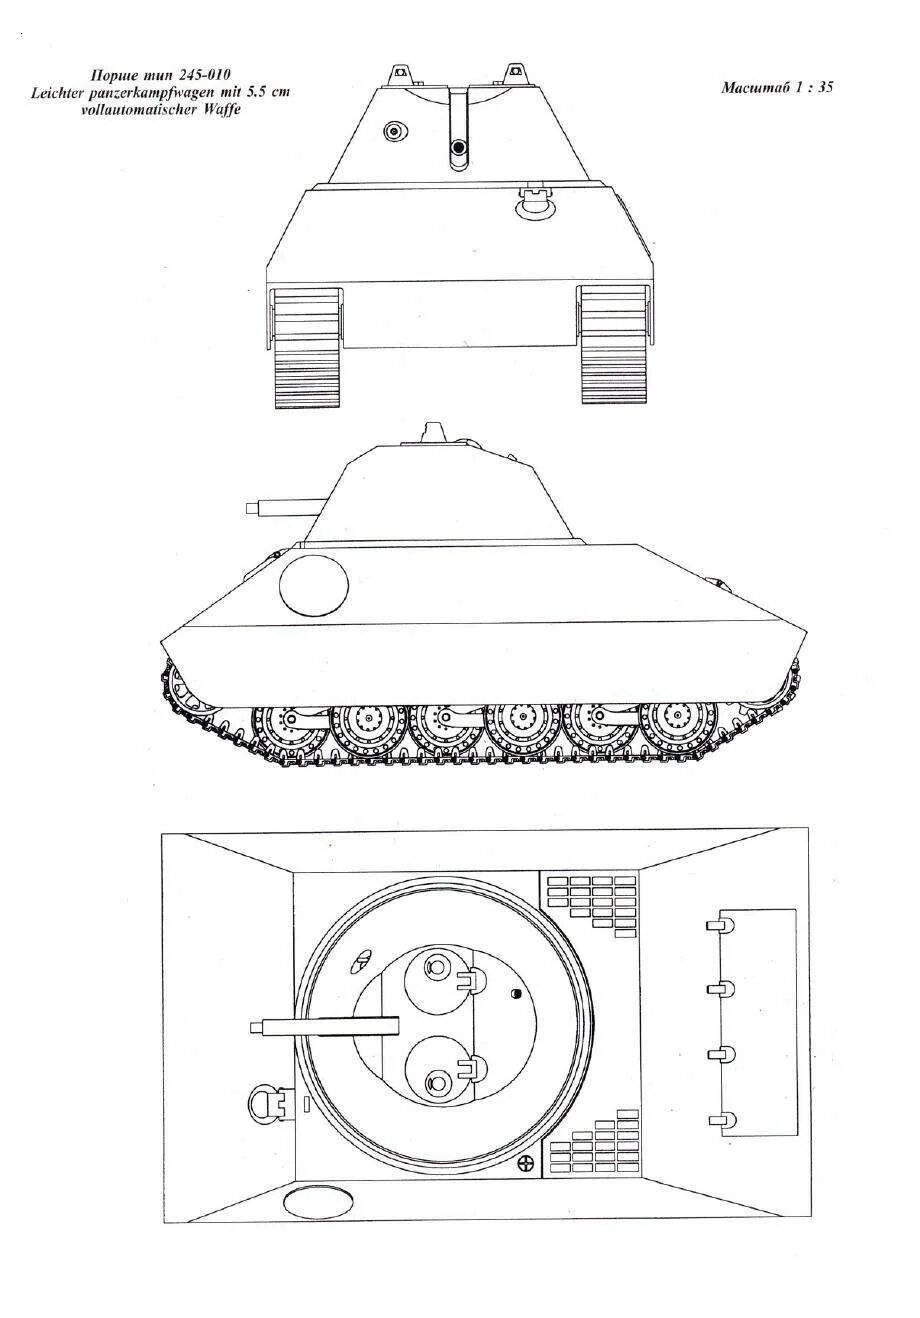 Шаблоны легких танков. Танк vk-45 чертеж. Porsche Type 245-010. Чертеж танка легкий. Чертежи танков легкие.